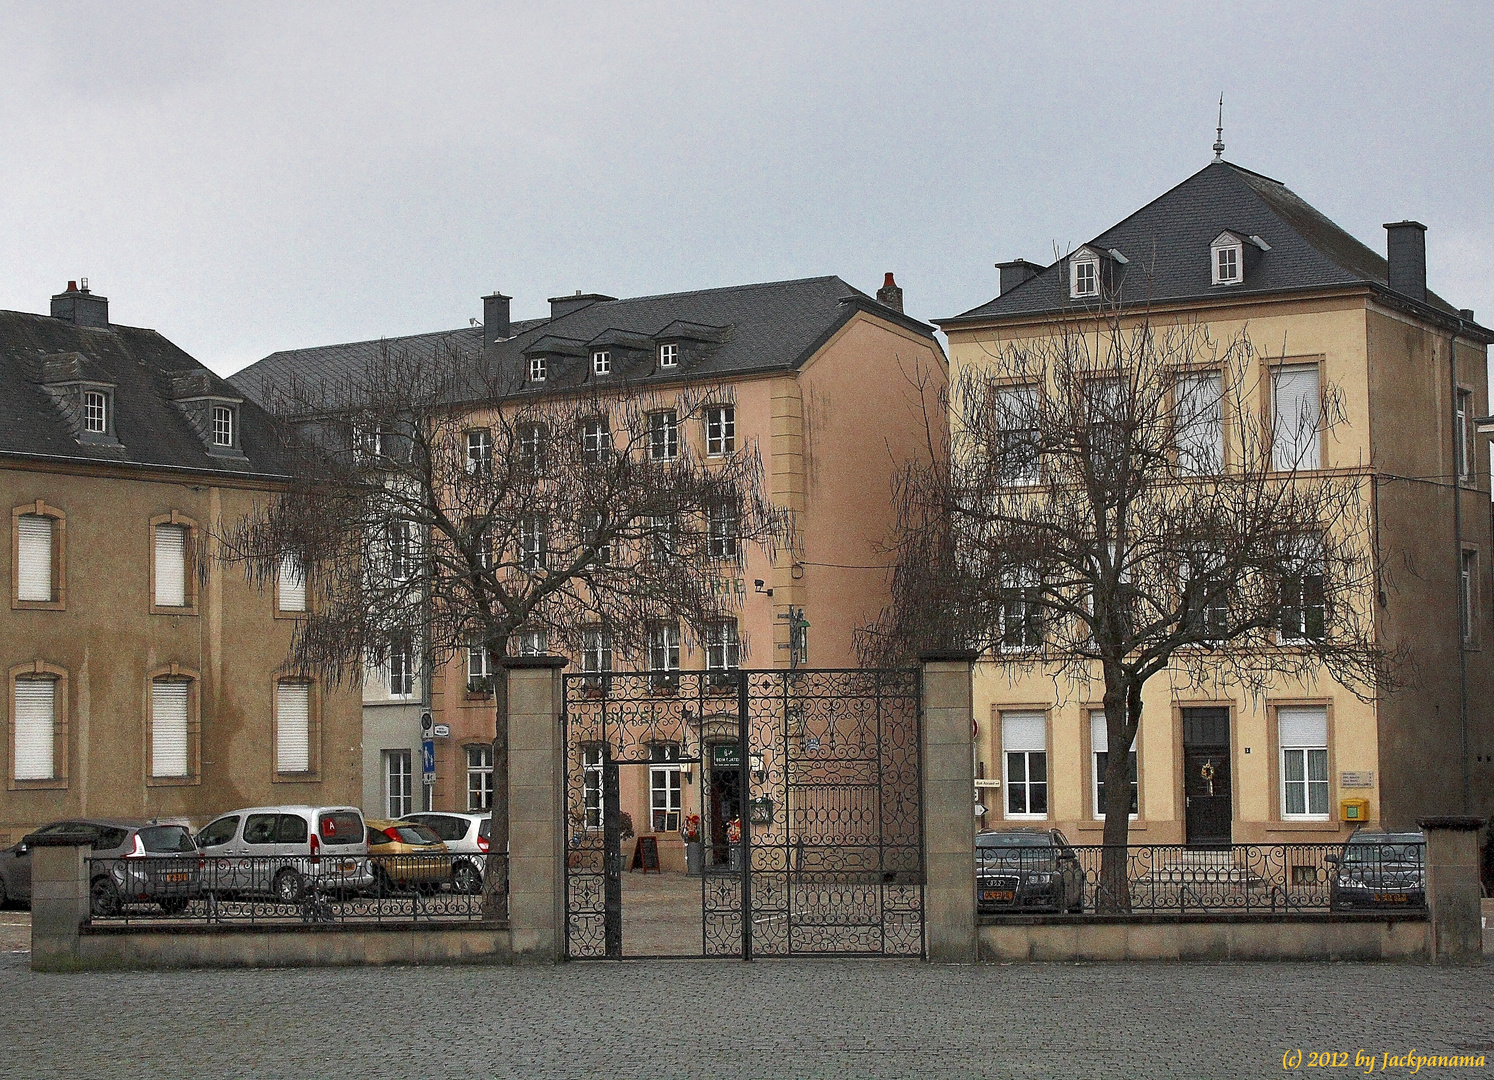 Zugang zur Basilika in Echternach (Luxemburg) von der Stadt her